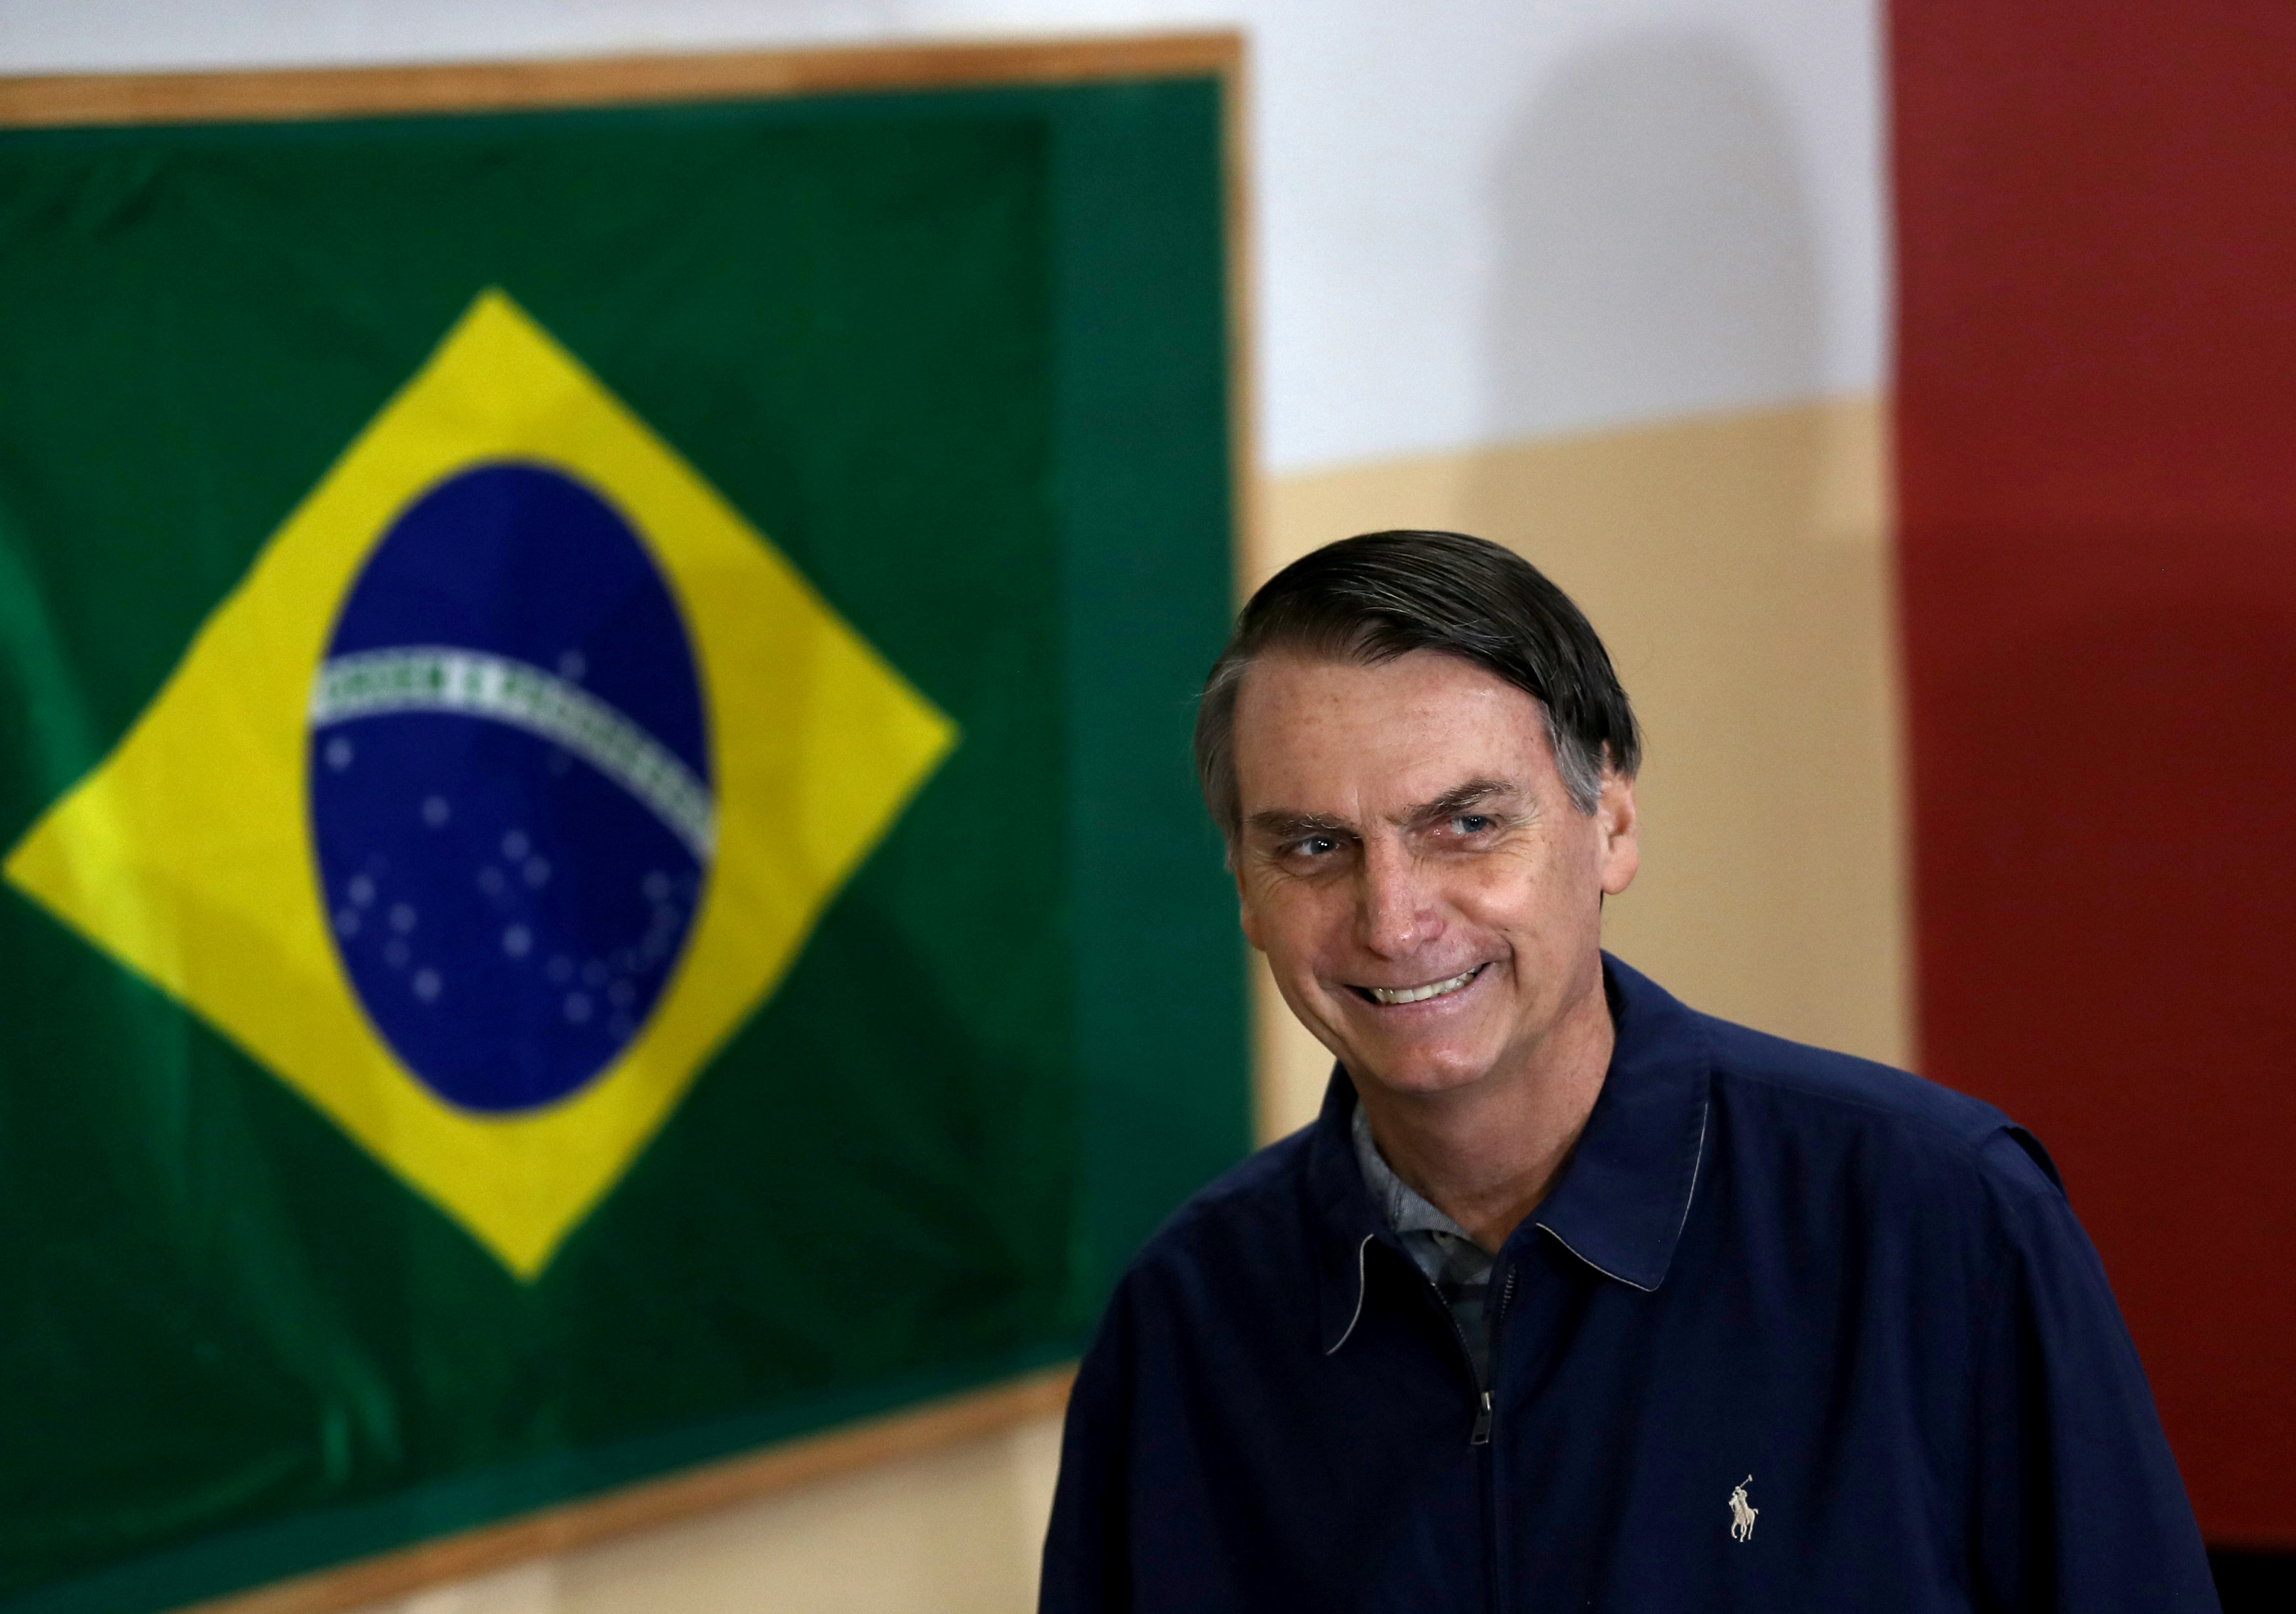 Bolsonaro amplia su ventaja frente a Haddad, según nuevo sondeo